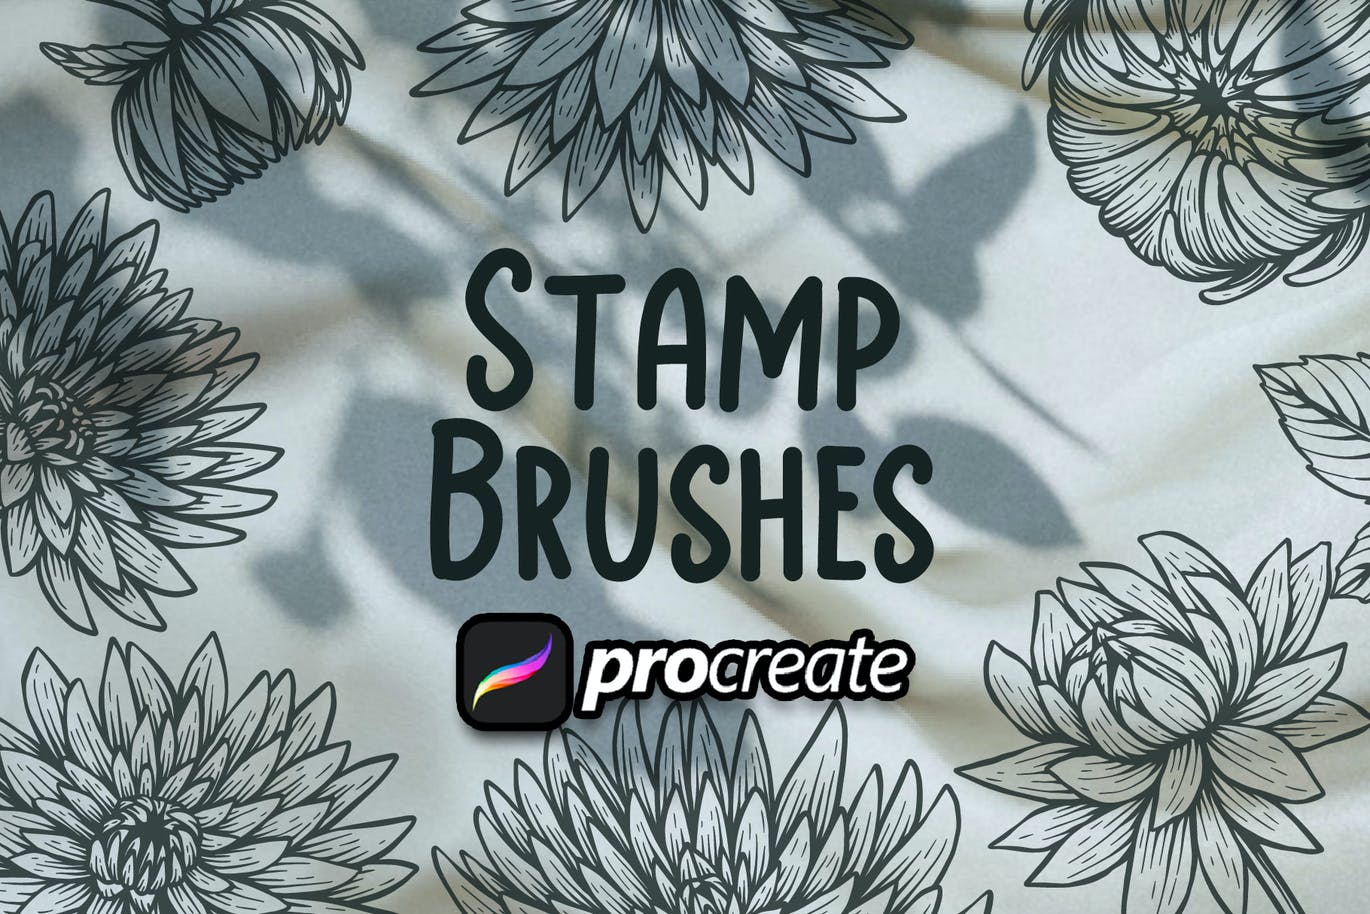 绽放花朵印章Procreate笔刷素材 Chrysalis Flower Brush Stamp Procreate 笔刷资源 第2张